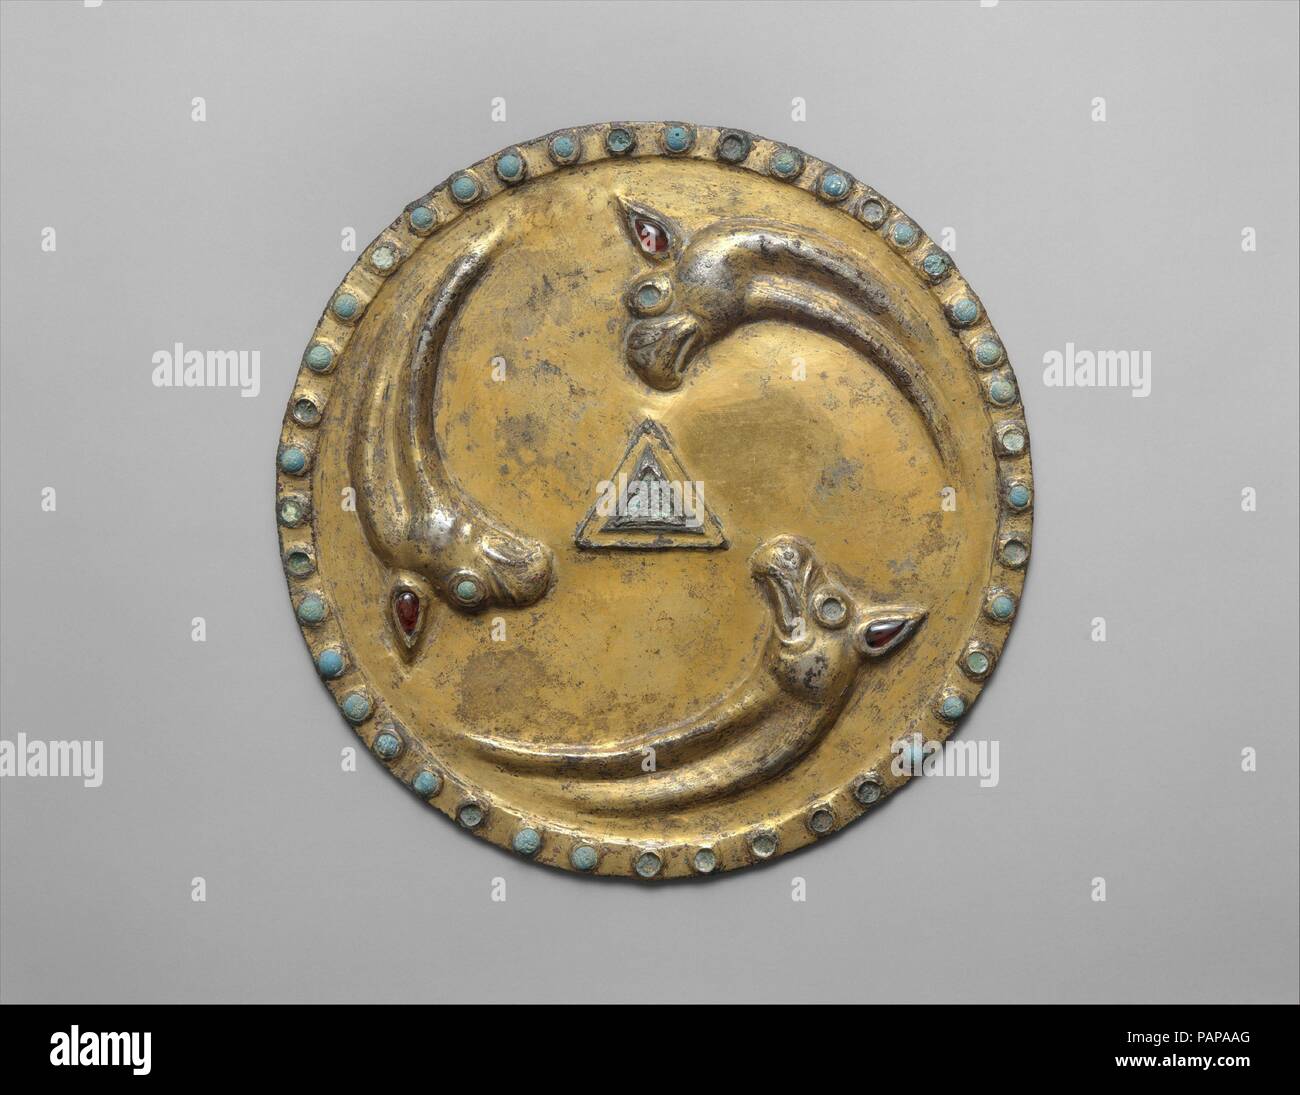 Roundel con teste di Griffin. Cultura: Sarmatian. Dimensioni: diam. 5 7/8 in. (14,9 cm). Data: ca. 1a-2a secolo. Museo: Metropolitan Museum of Art di New York, Stati Uniti d'America. Foto Stock